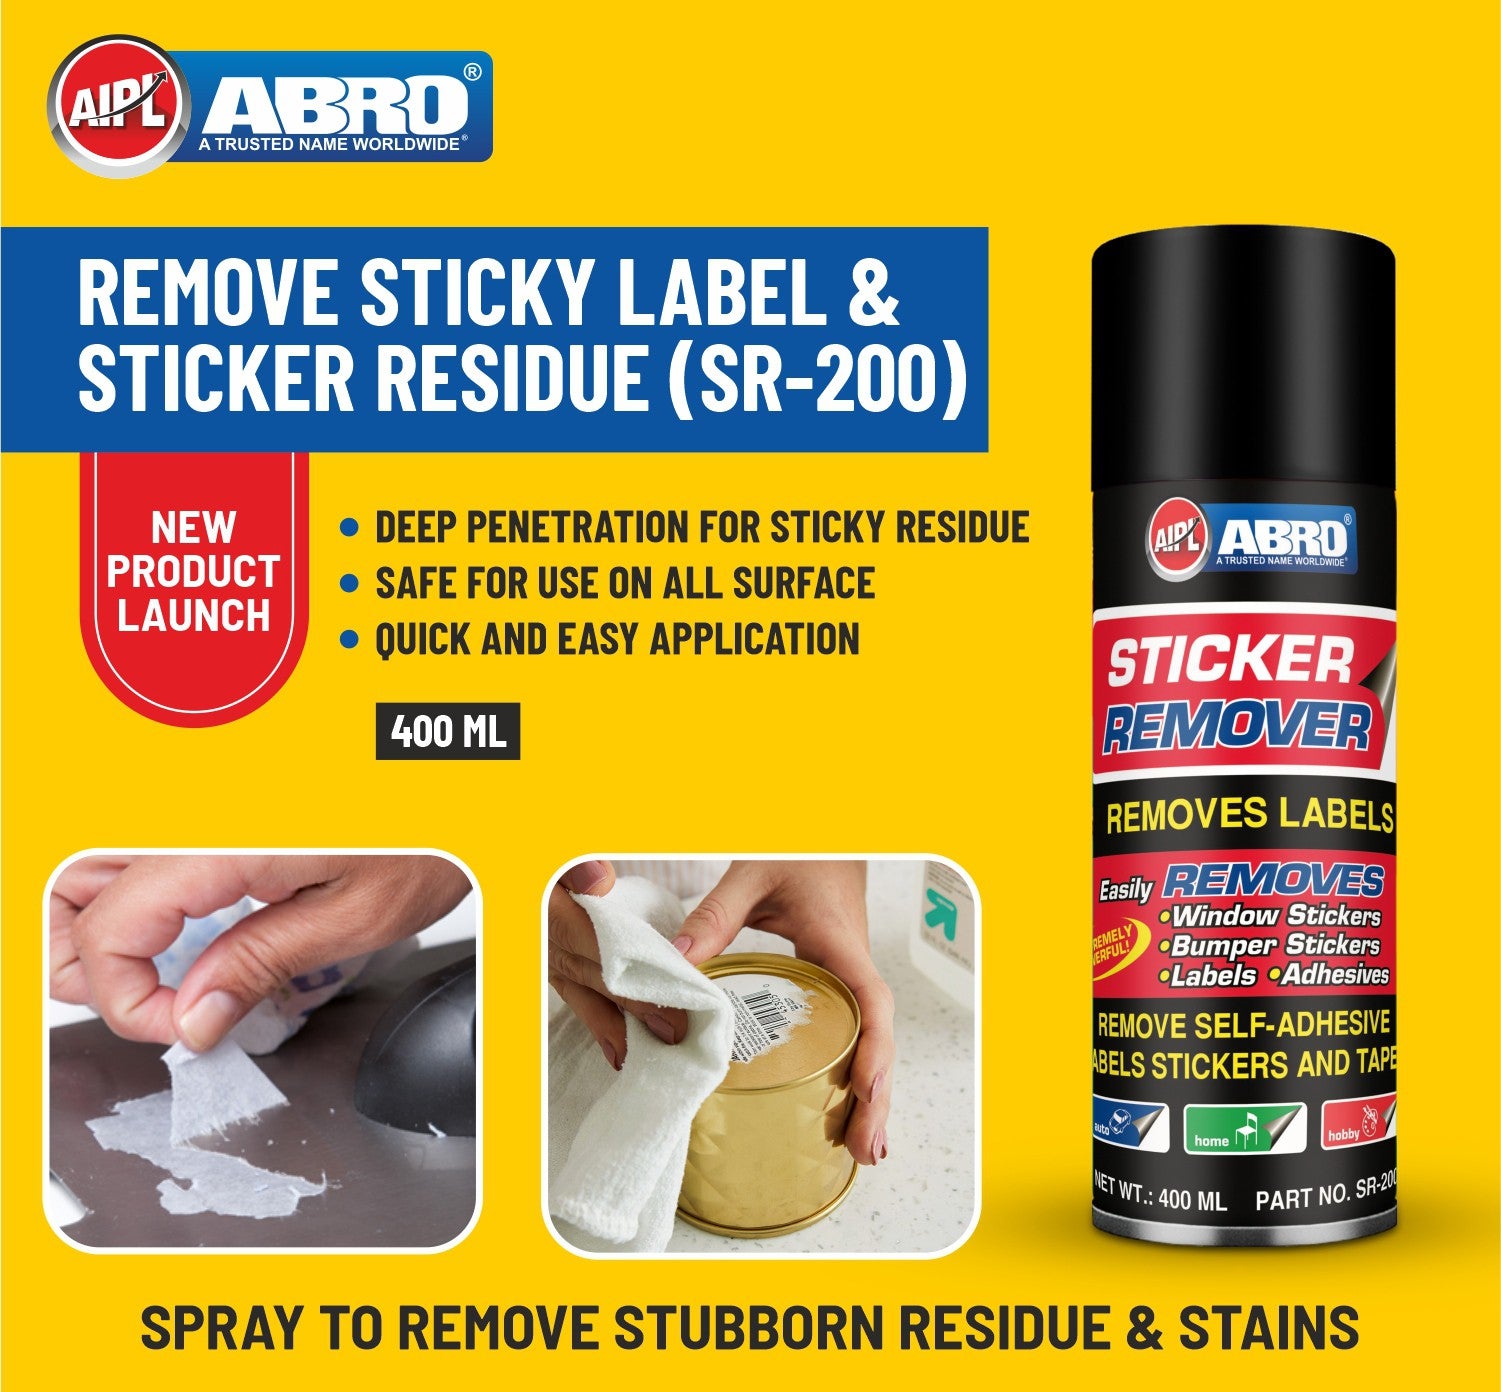 IMEC 573 Lift Off - Spray Adhesive Remover / Sticker Label Remover